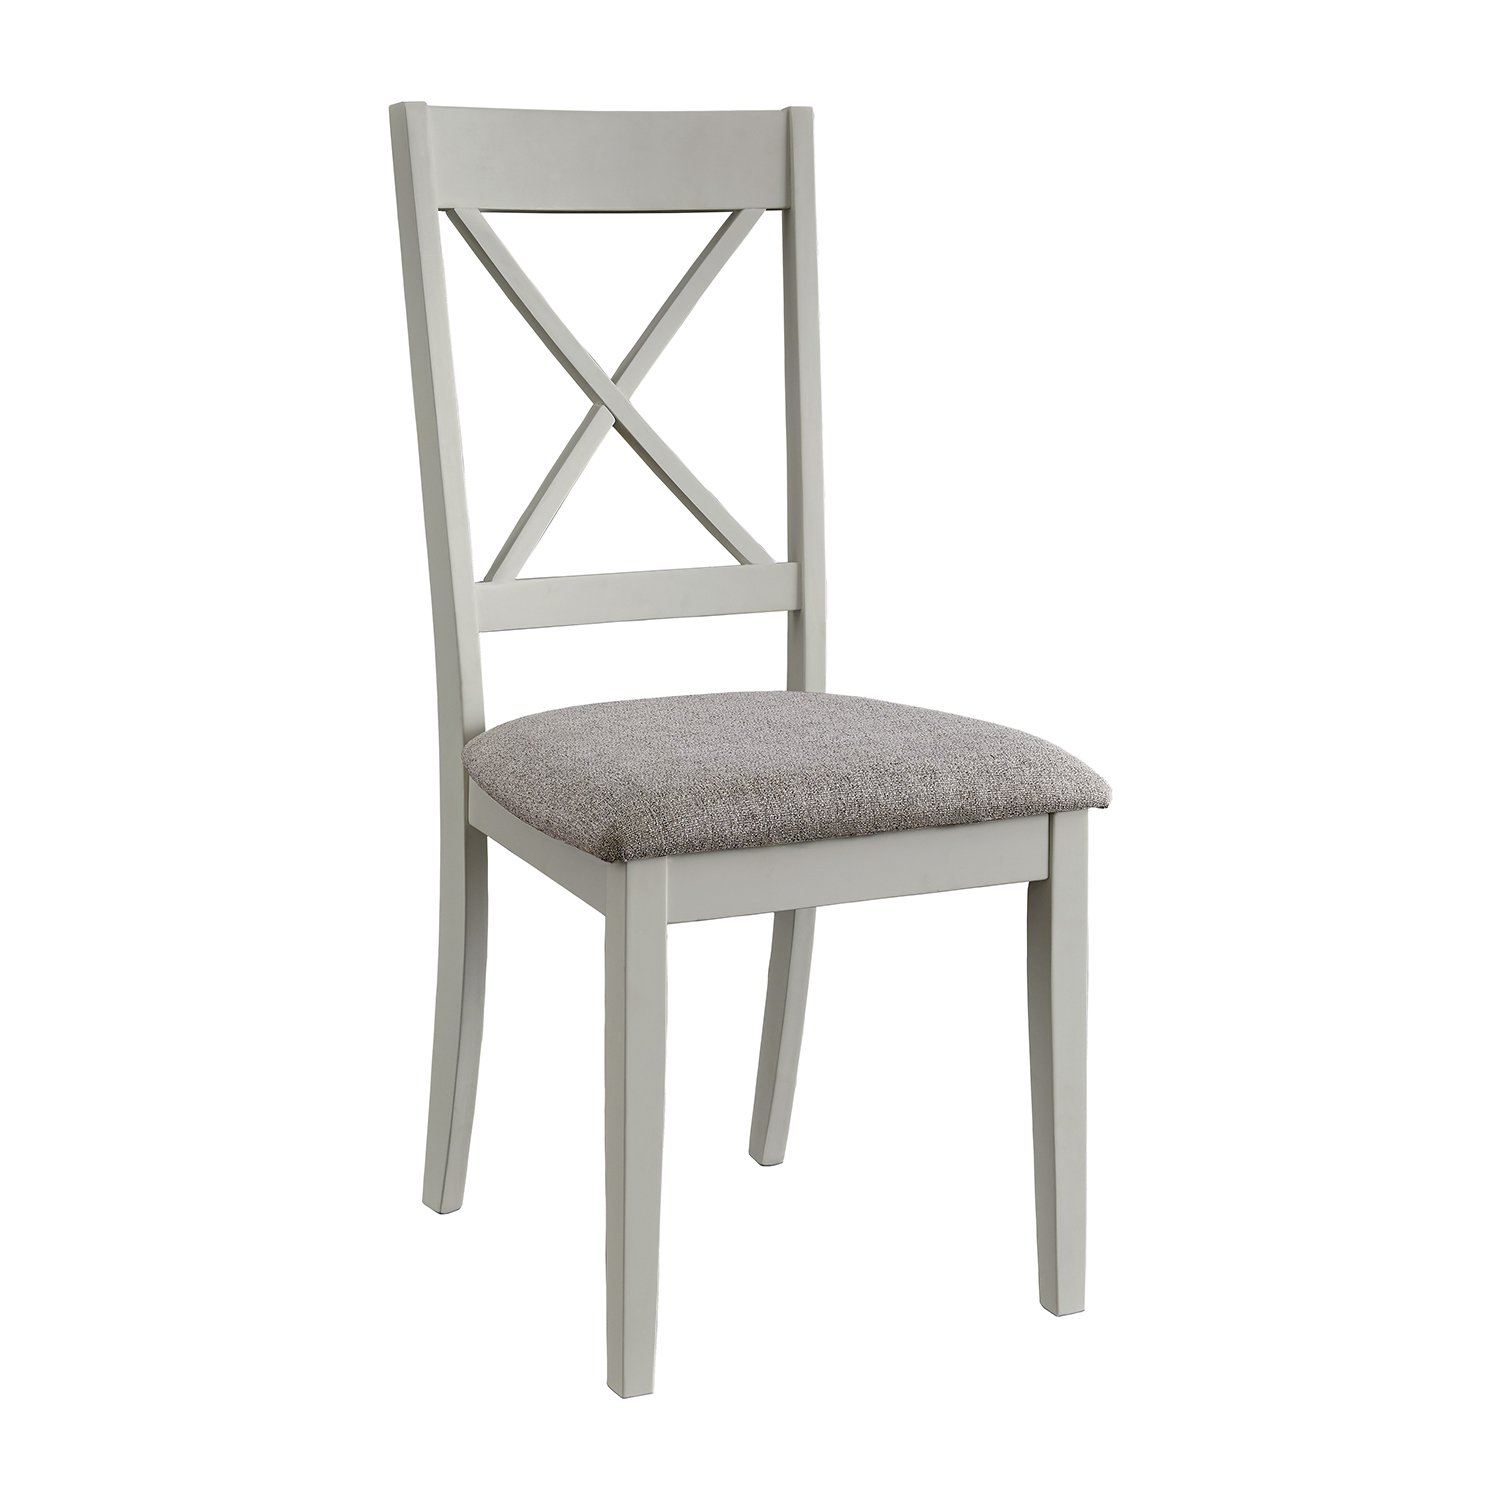 D865-10 Chair.jpg